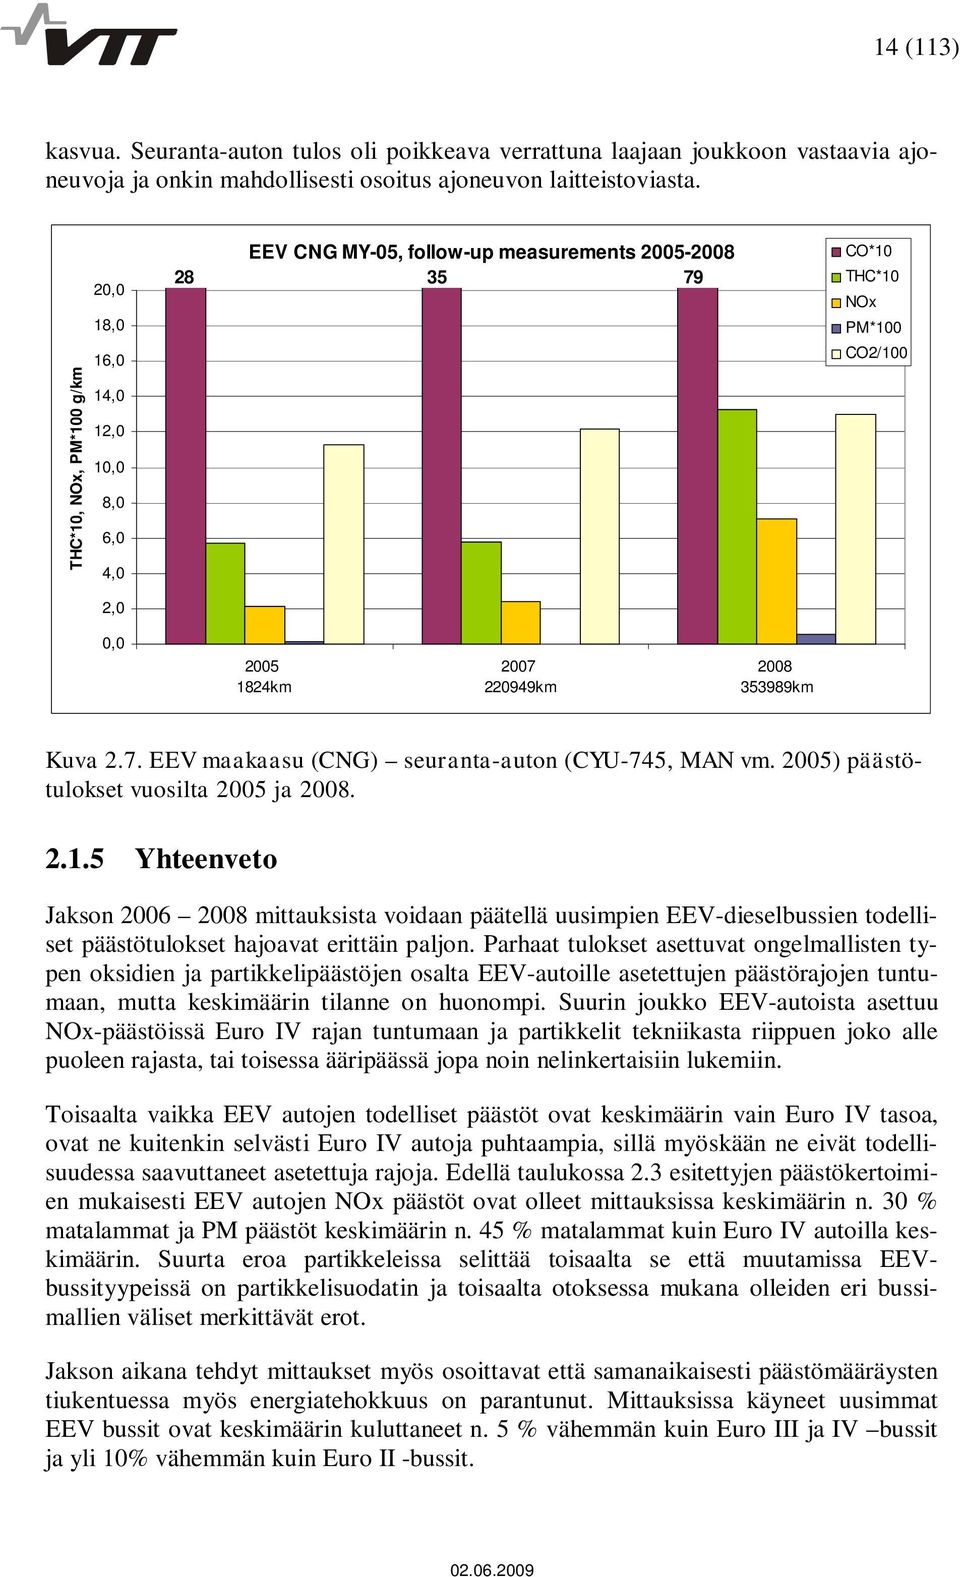 353989km Kuva 2.7. EEV maakaasu (CNG) seuranta-auton (CYU-745, MAN vm. 2005) päästötulokset vuosilta 2005 ja 2008. 2.1.